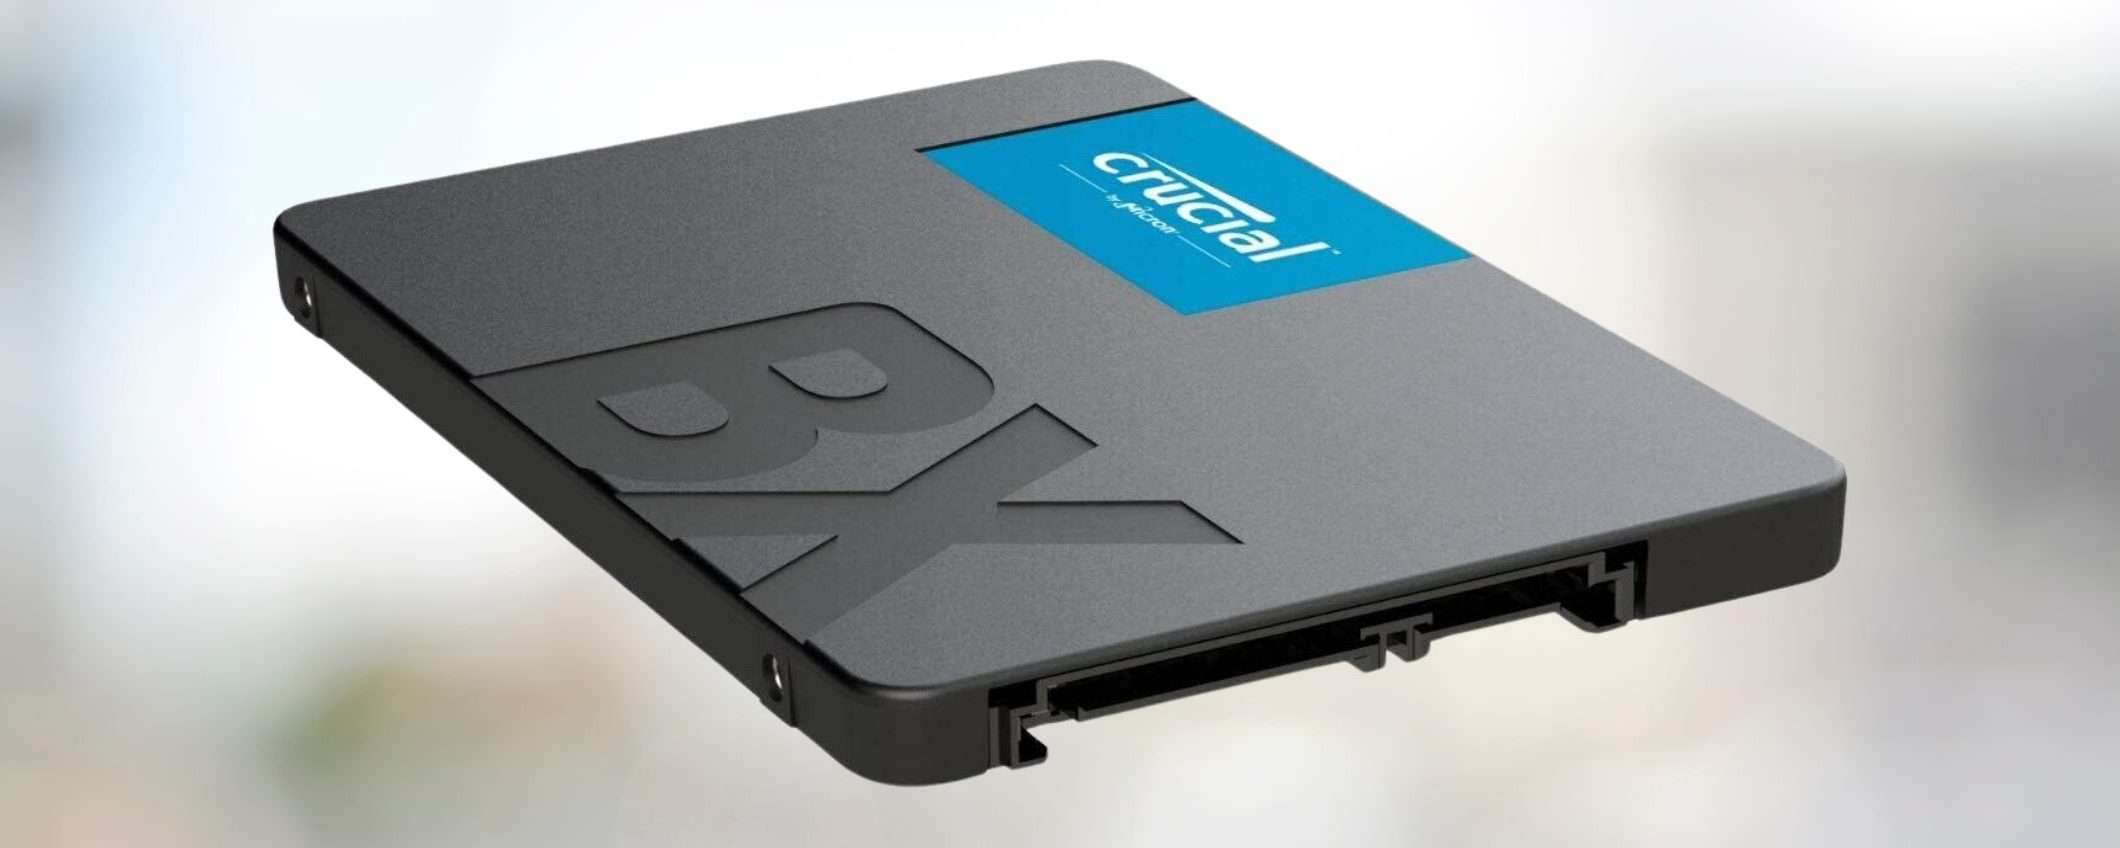 Questo SSD Crucial da 240GB a 26,99€ sta andando A RUBA su eBay